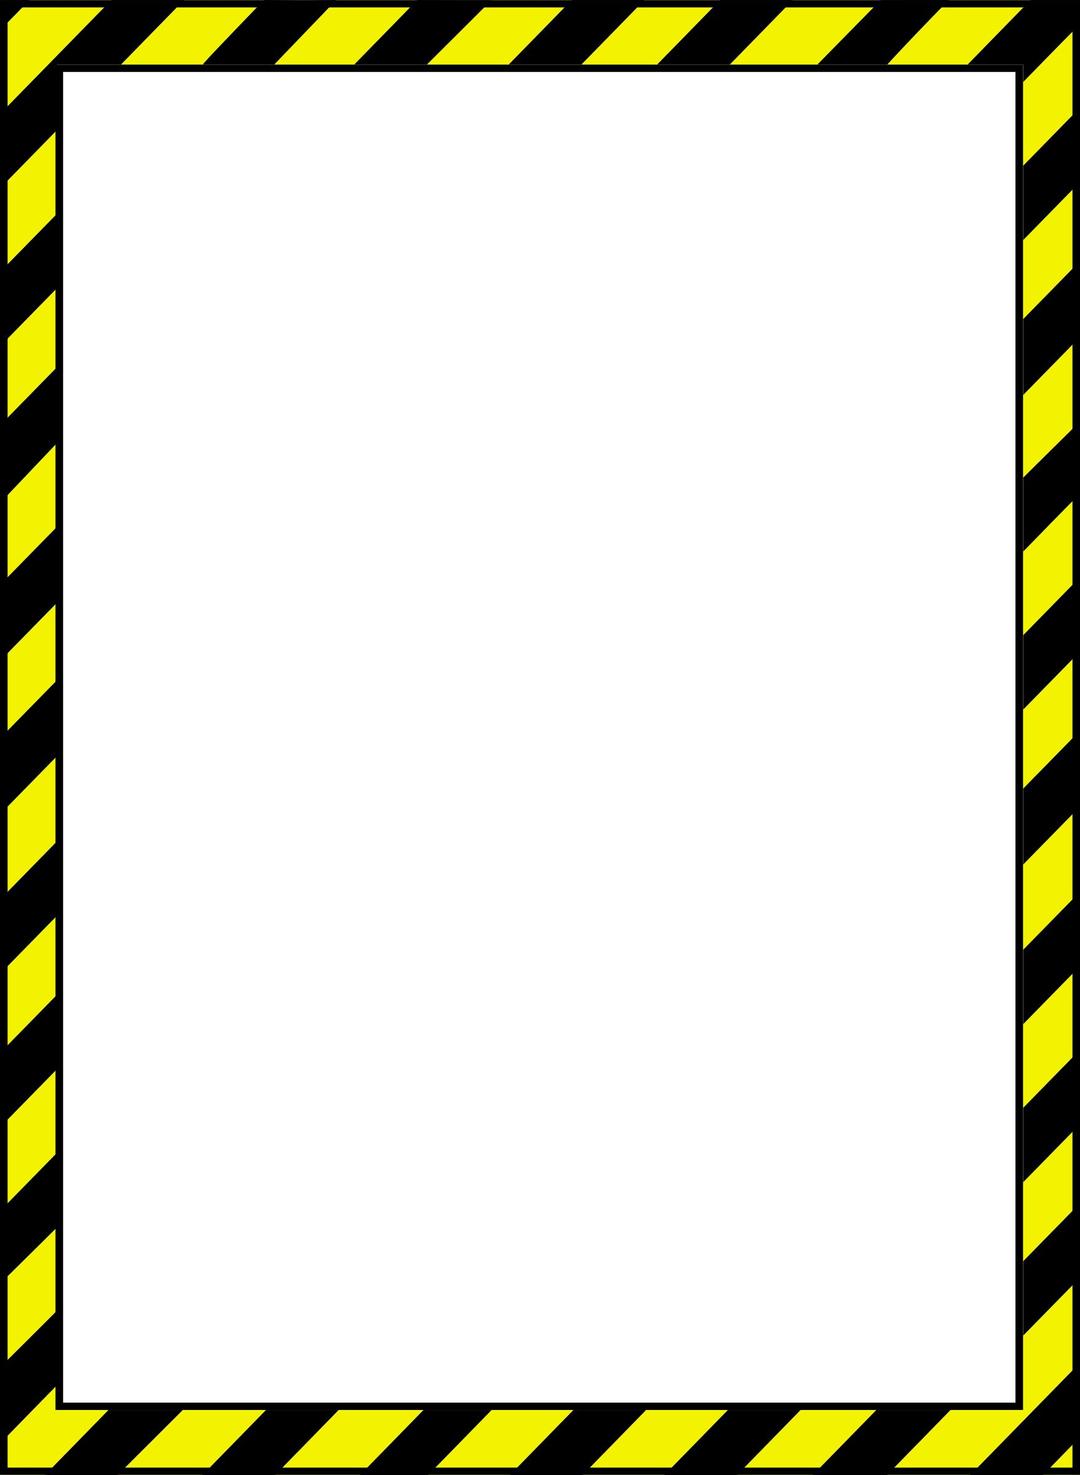 Caution Border 2 png transparent